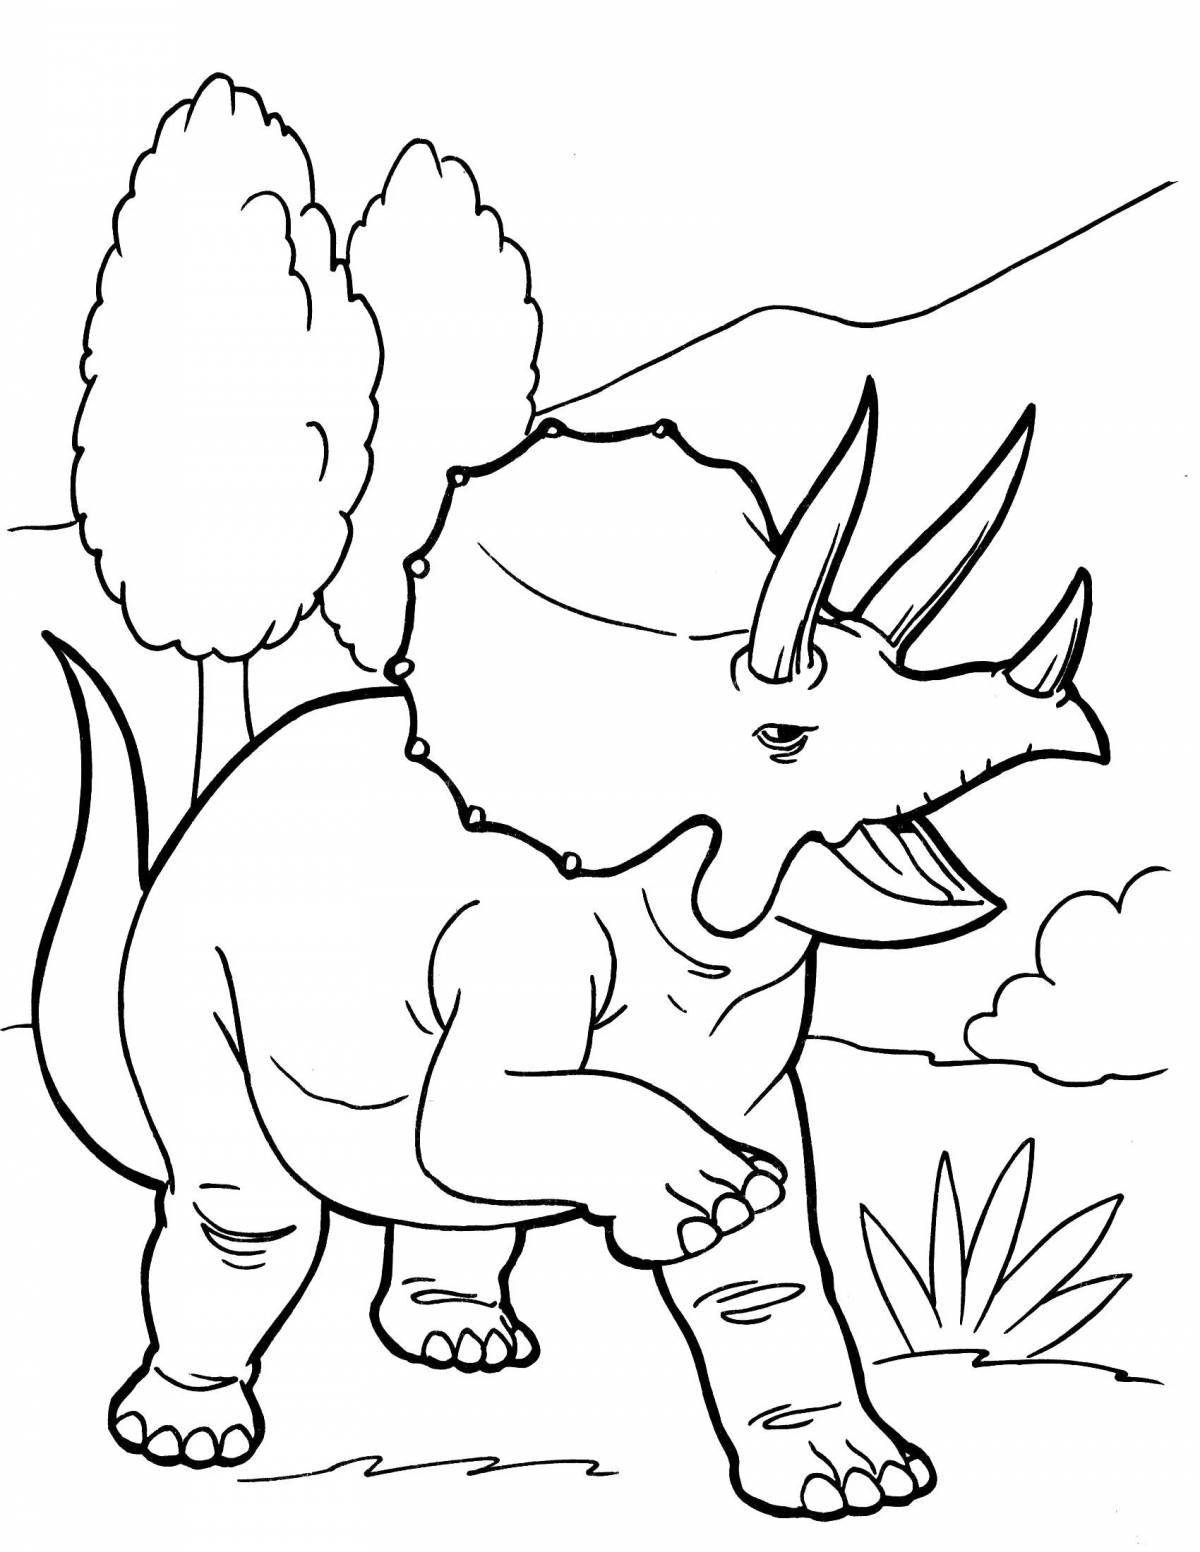 Раскраска энергичный трицератопс динозавр